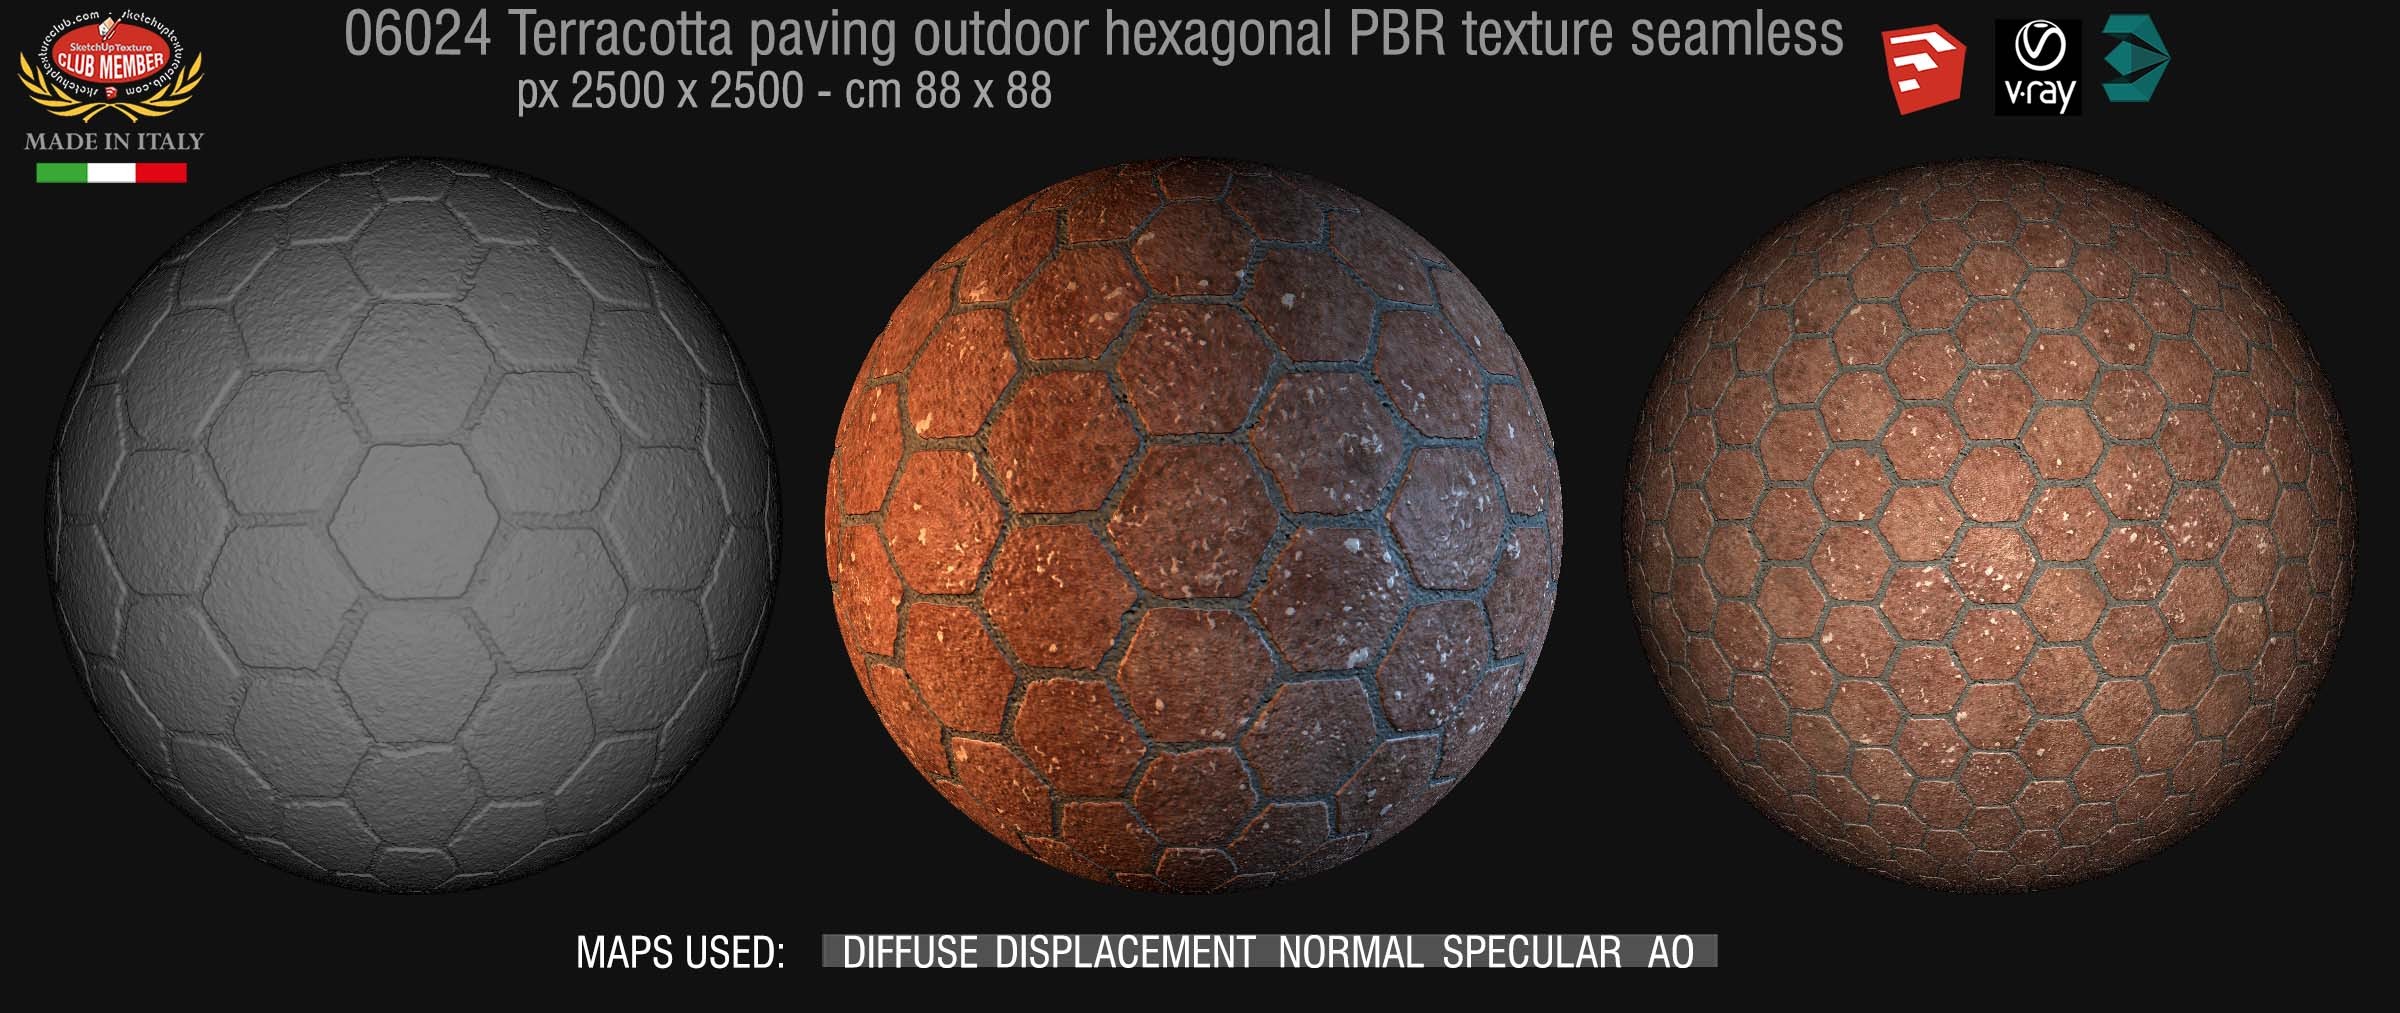 06024 Terracotta paving outdoor hexagonal PBR texture seamless DEMO